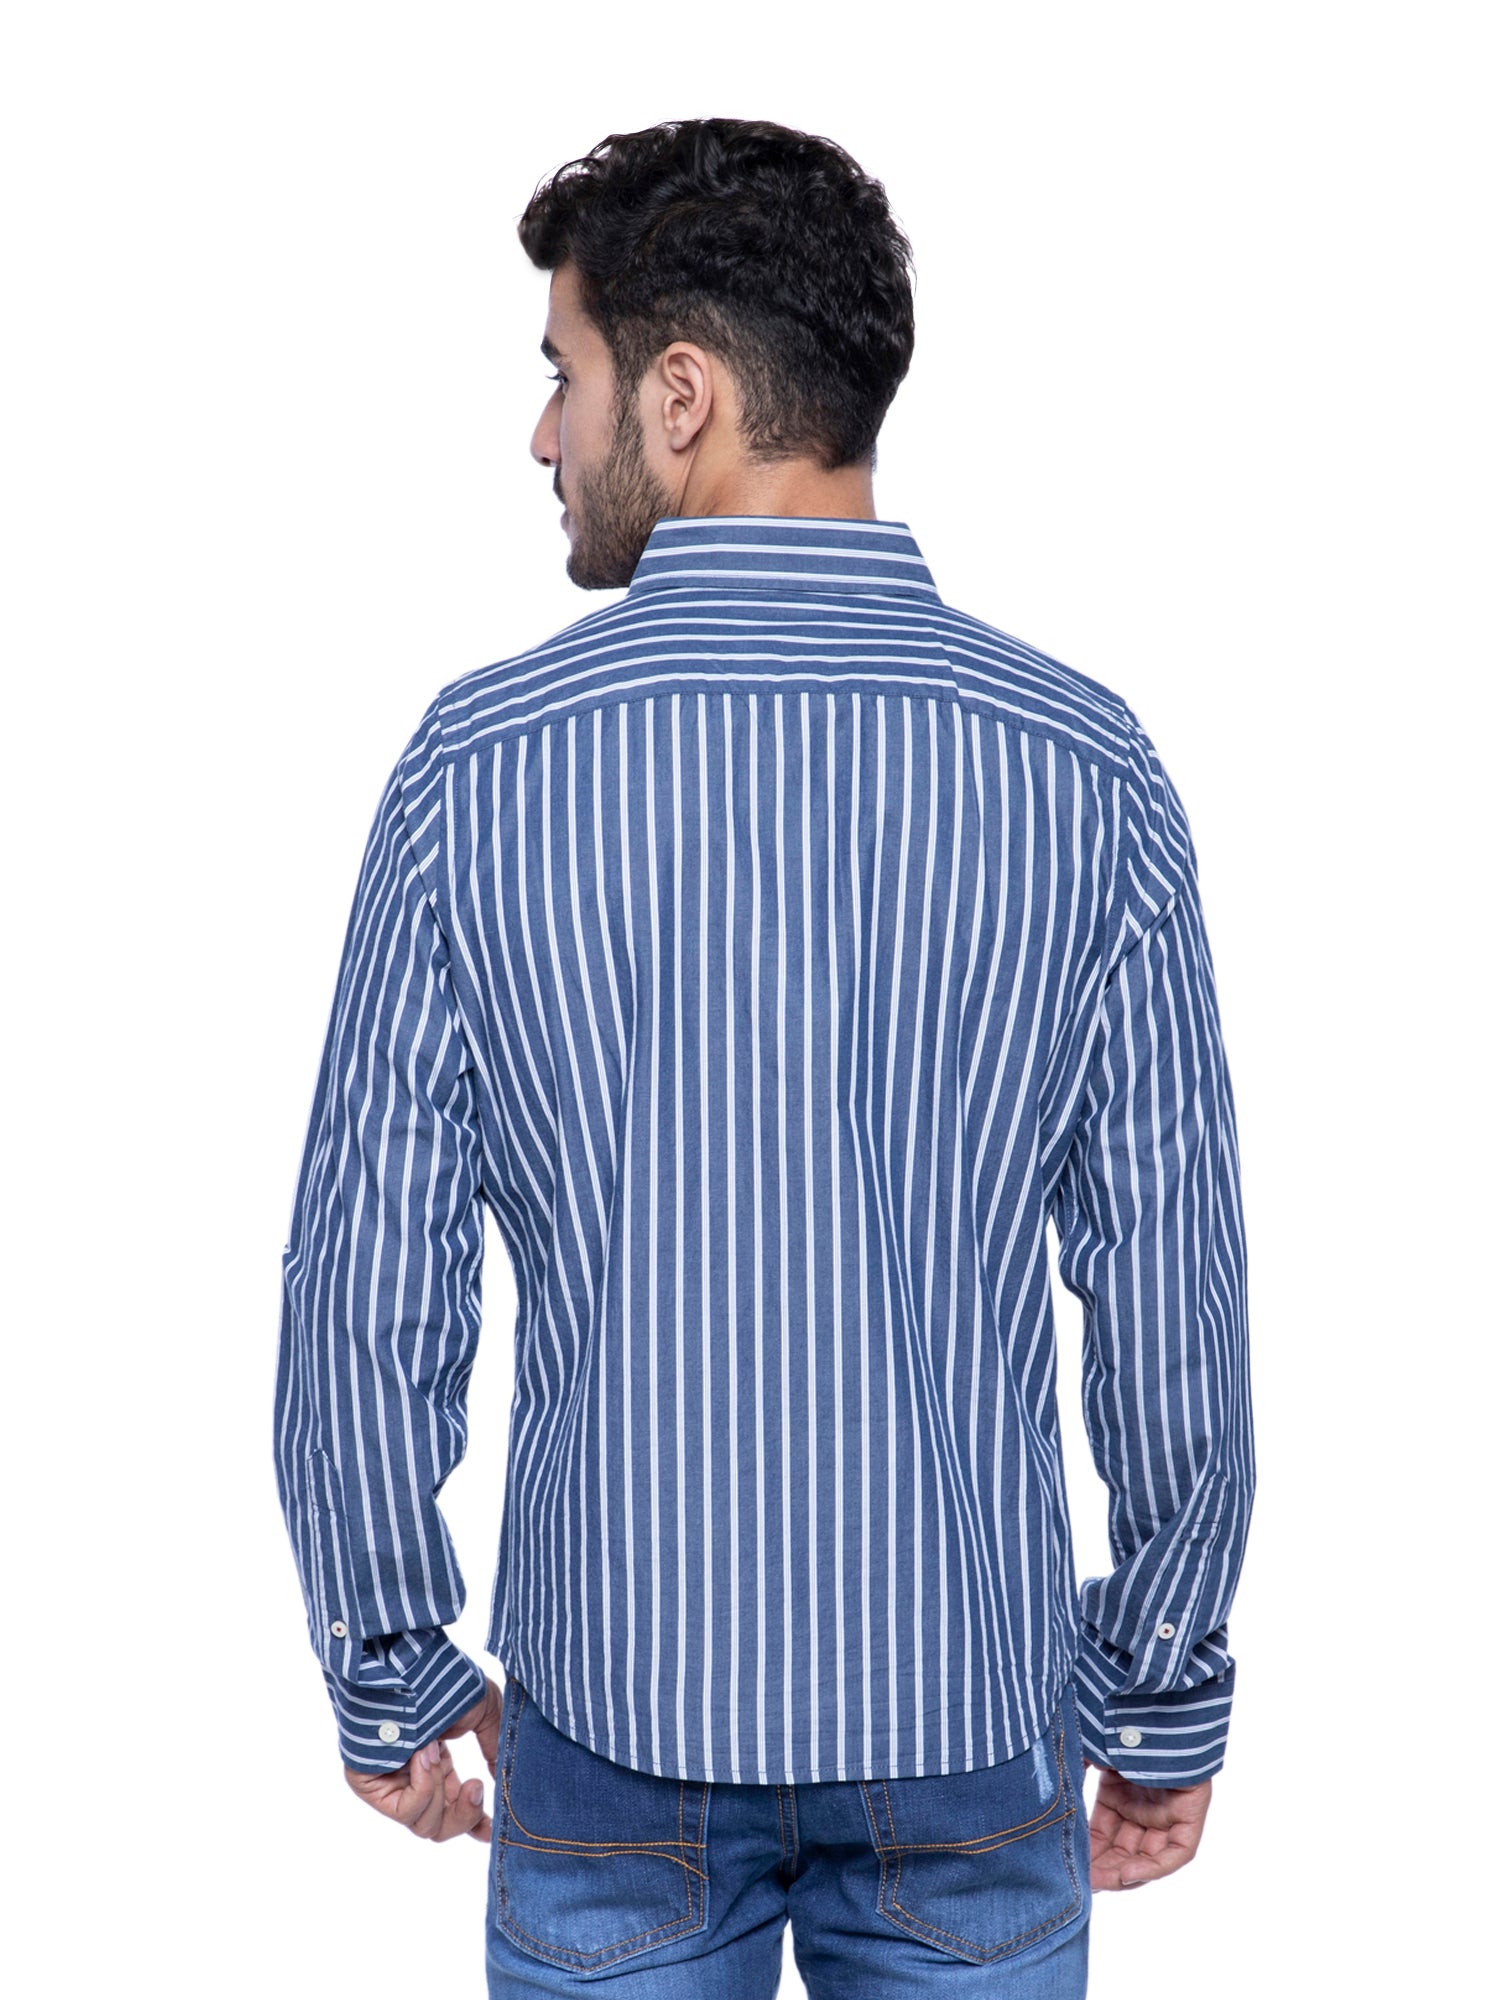 hollister blue striped shirt